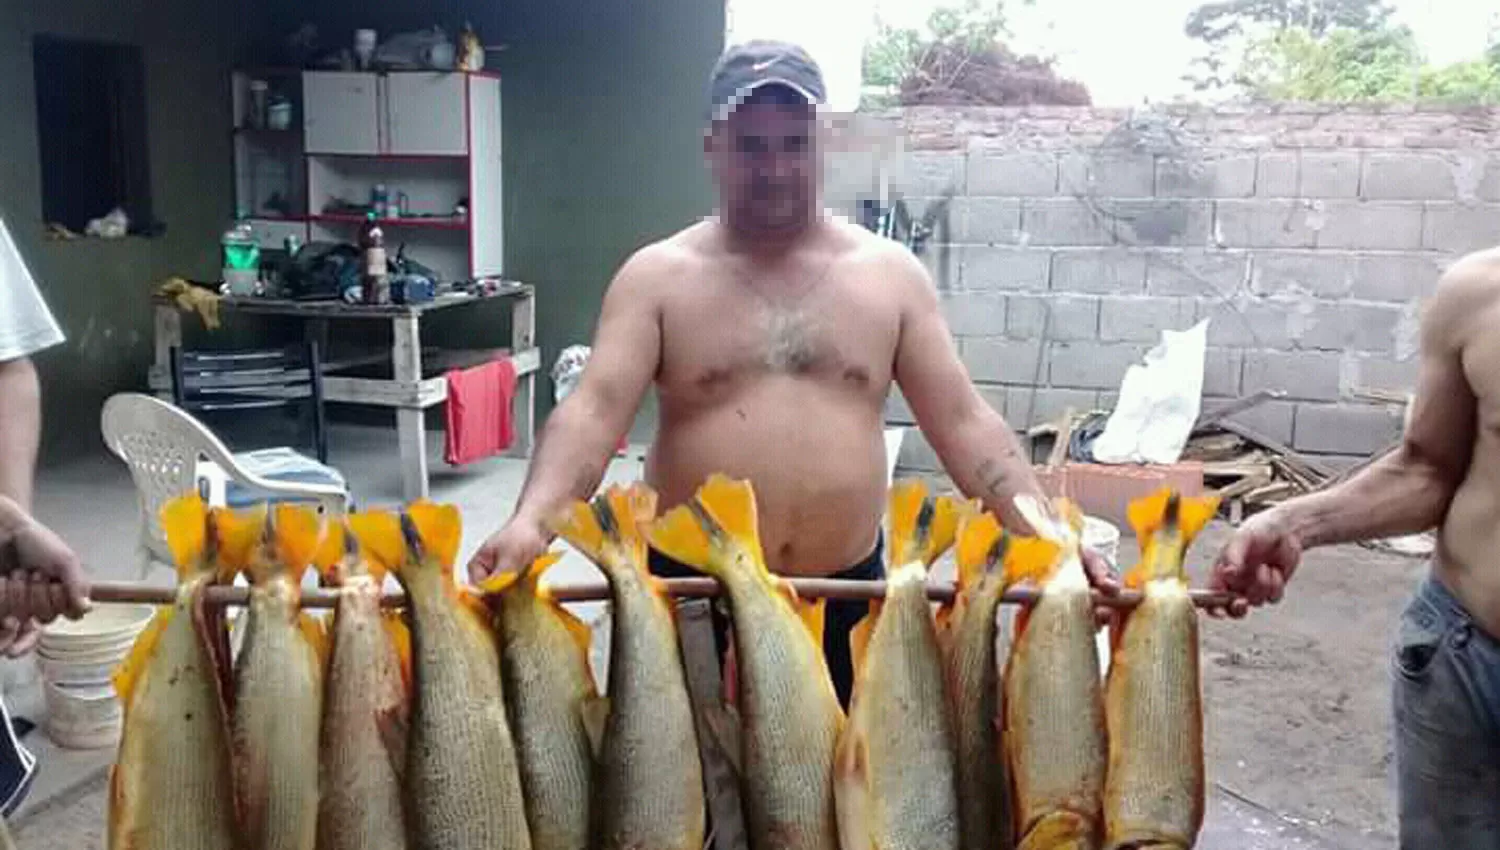 UN CRIMEN. Un pescador muestra todos los dorados que sacrificó en una salida, pese a que está prohibido hacerlo.